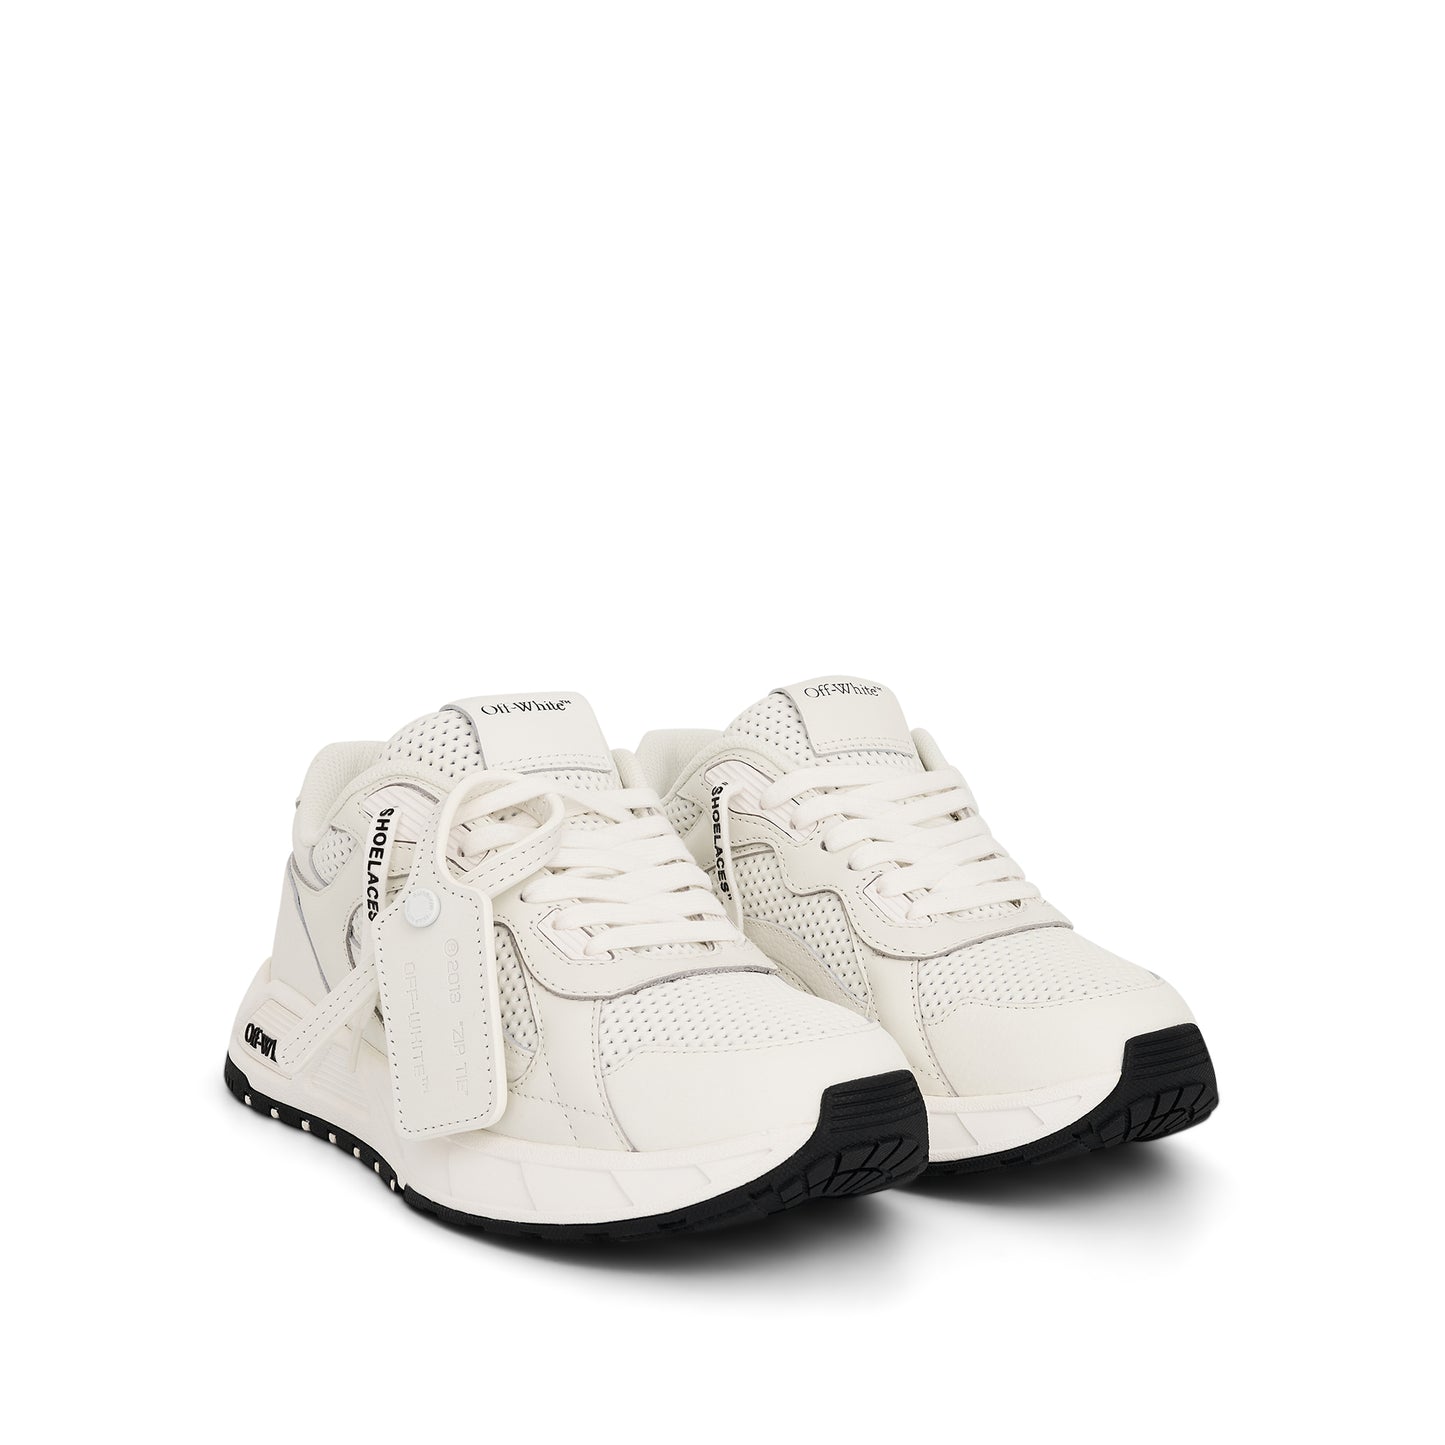 Kick off Sneaker In Colour White